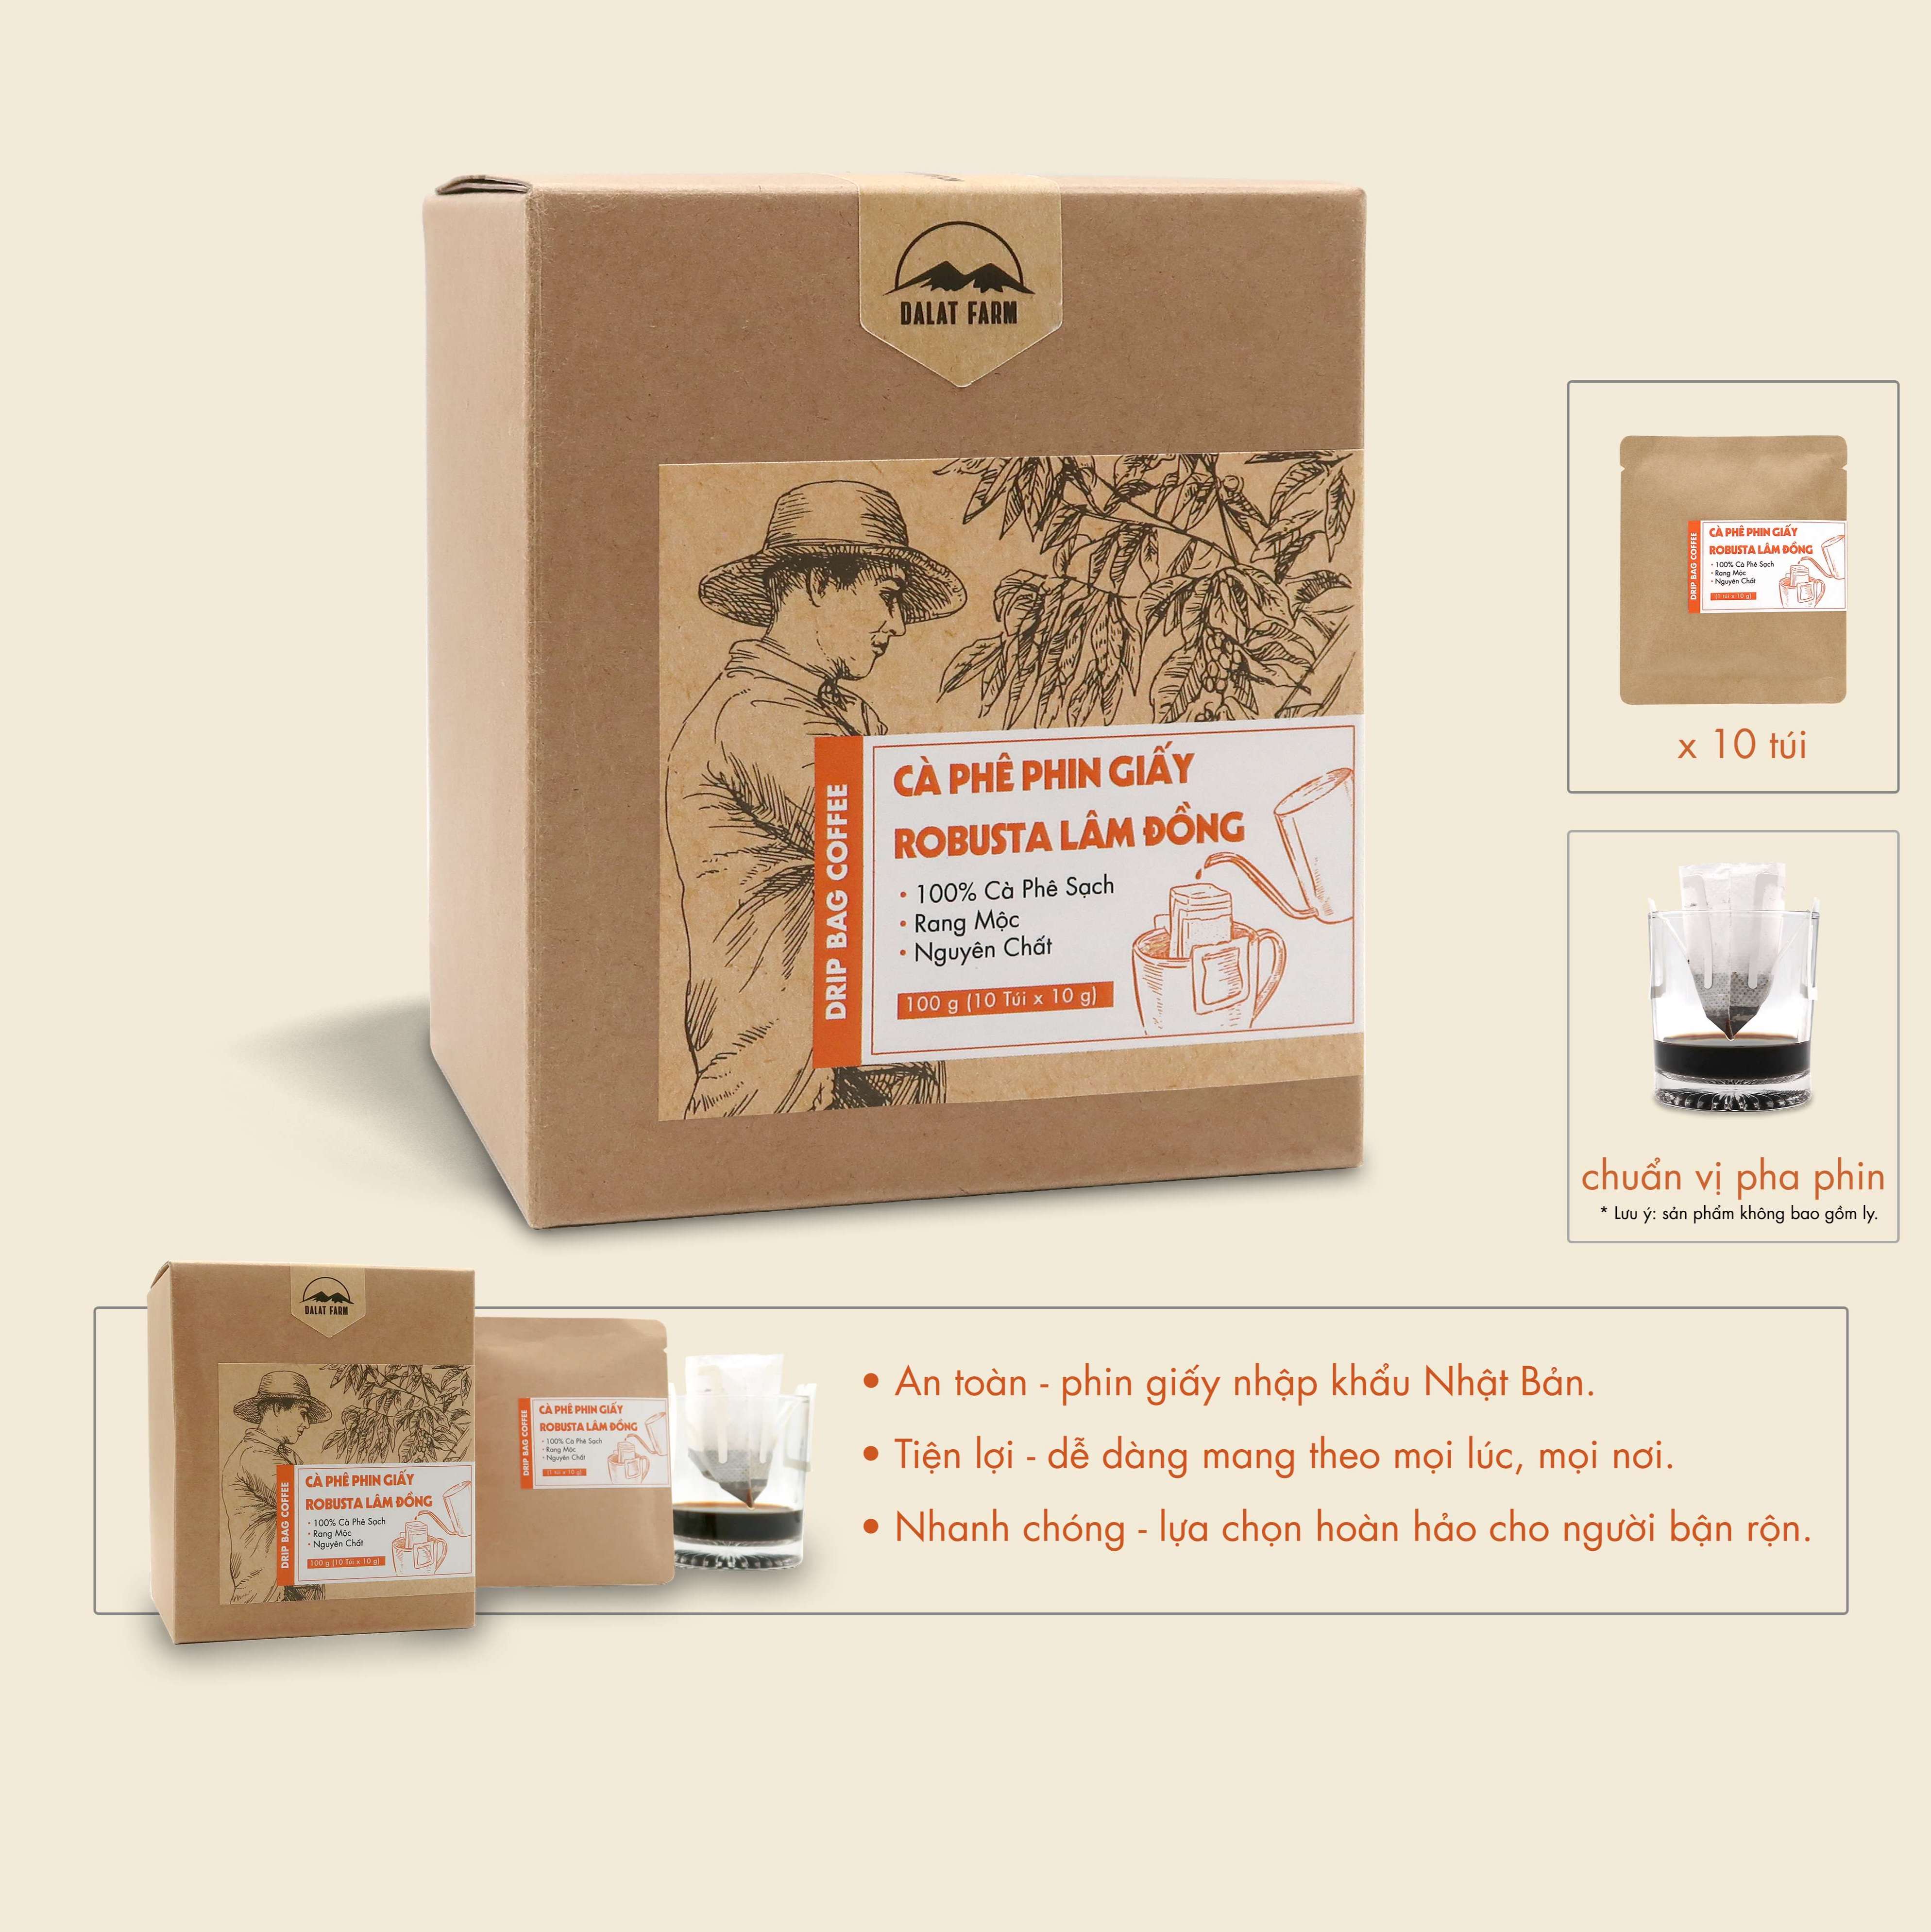 Cà phê phin giấy Robusta Lâm Đồng DalatFarm - Hộp 10 túi x 10 g